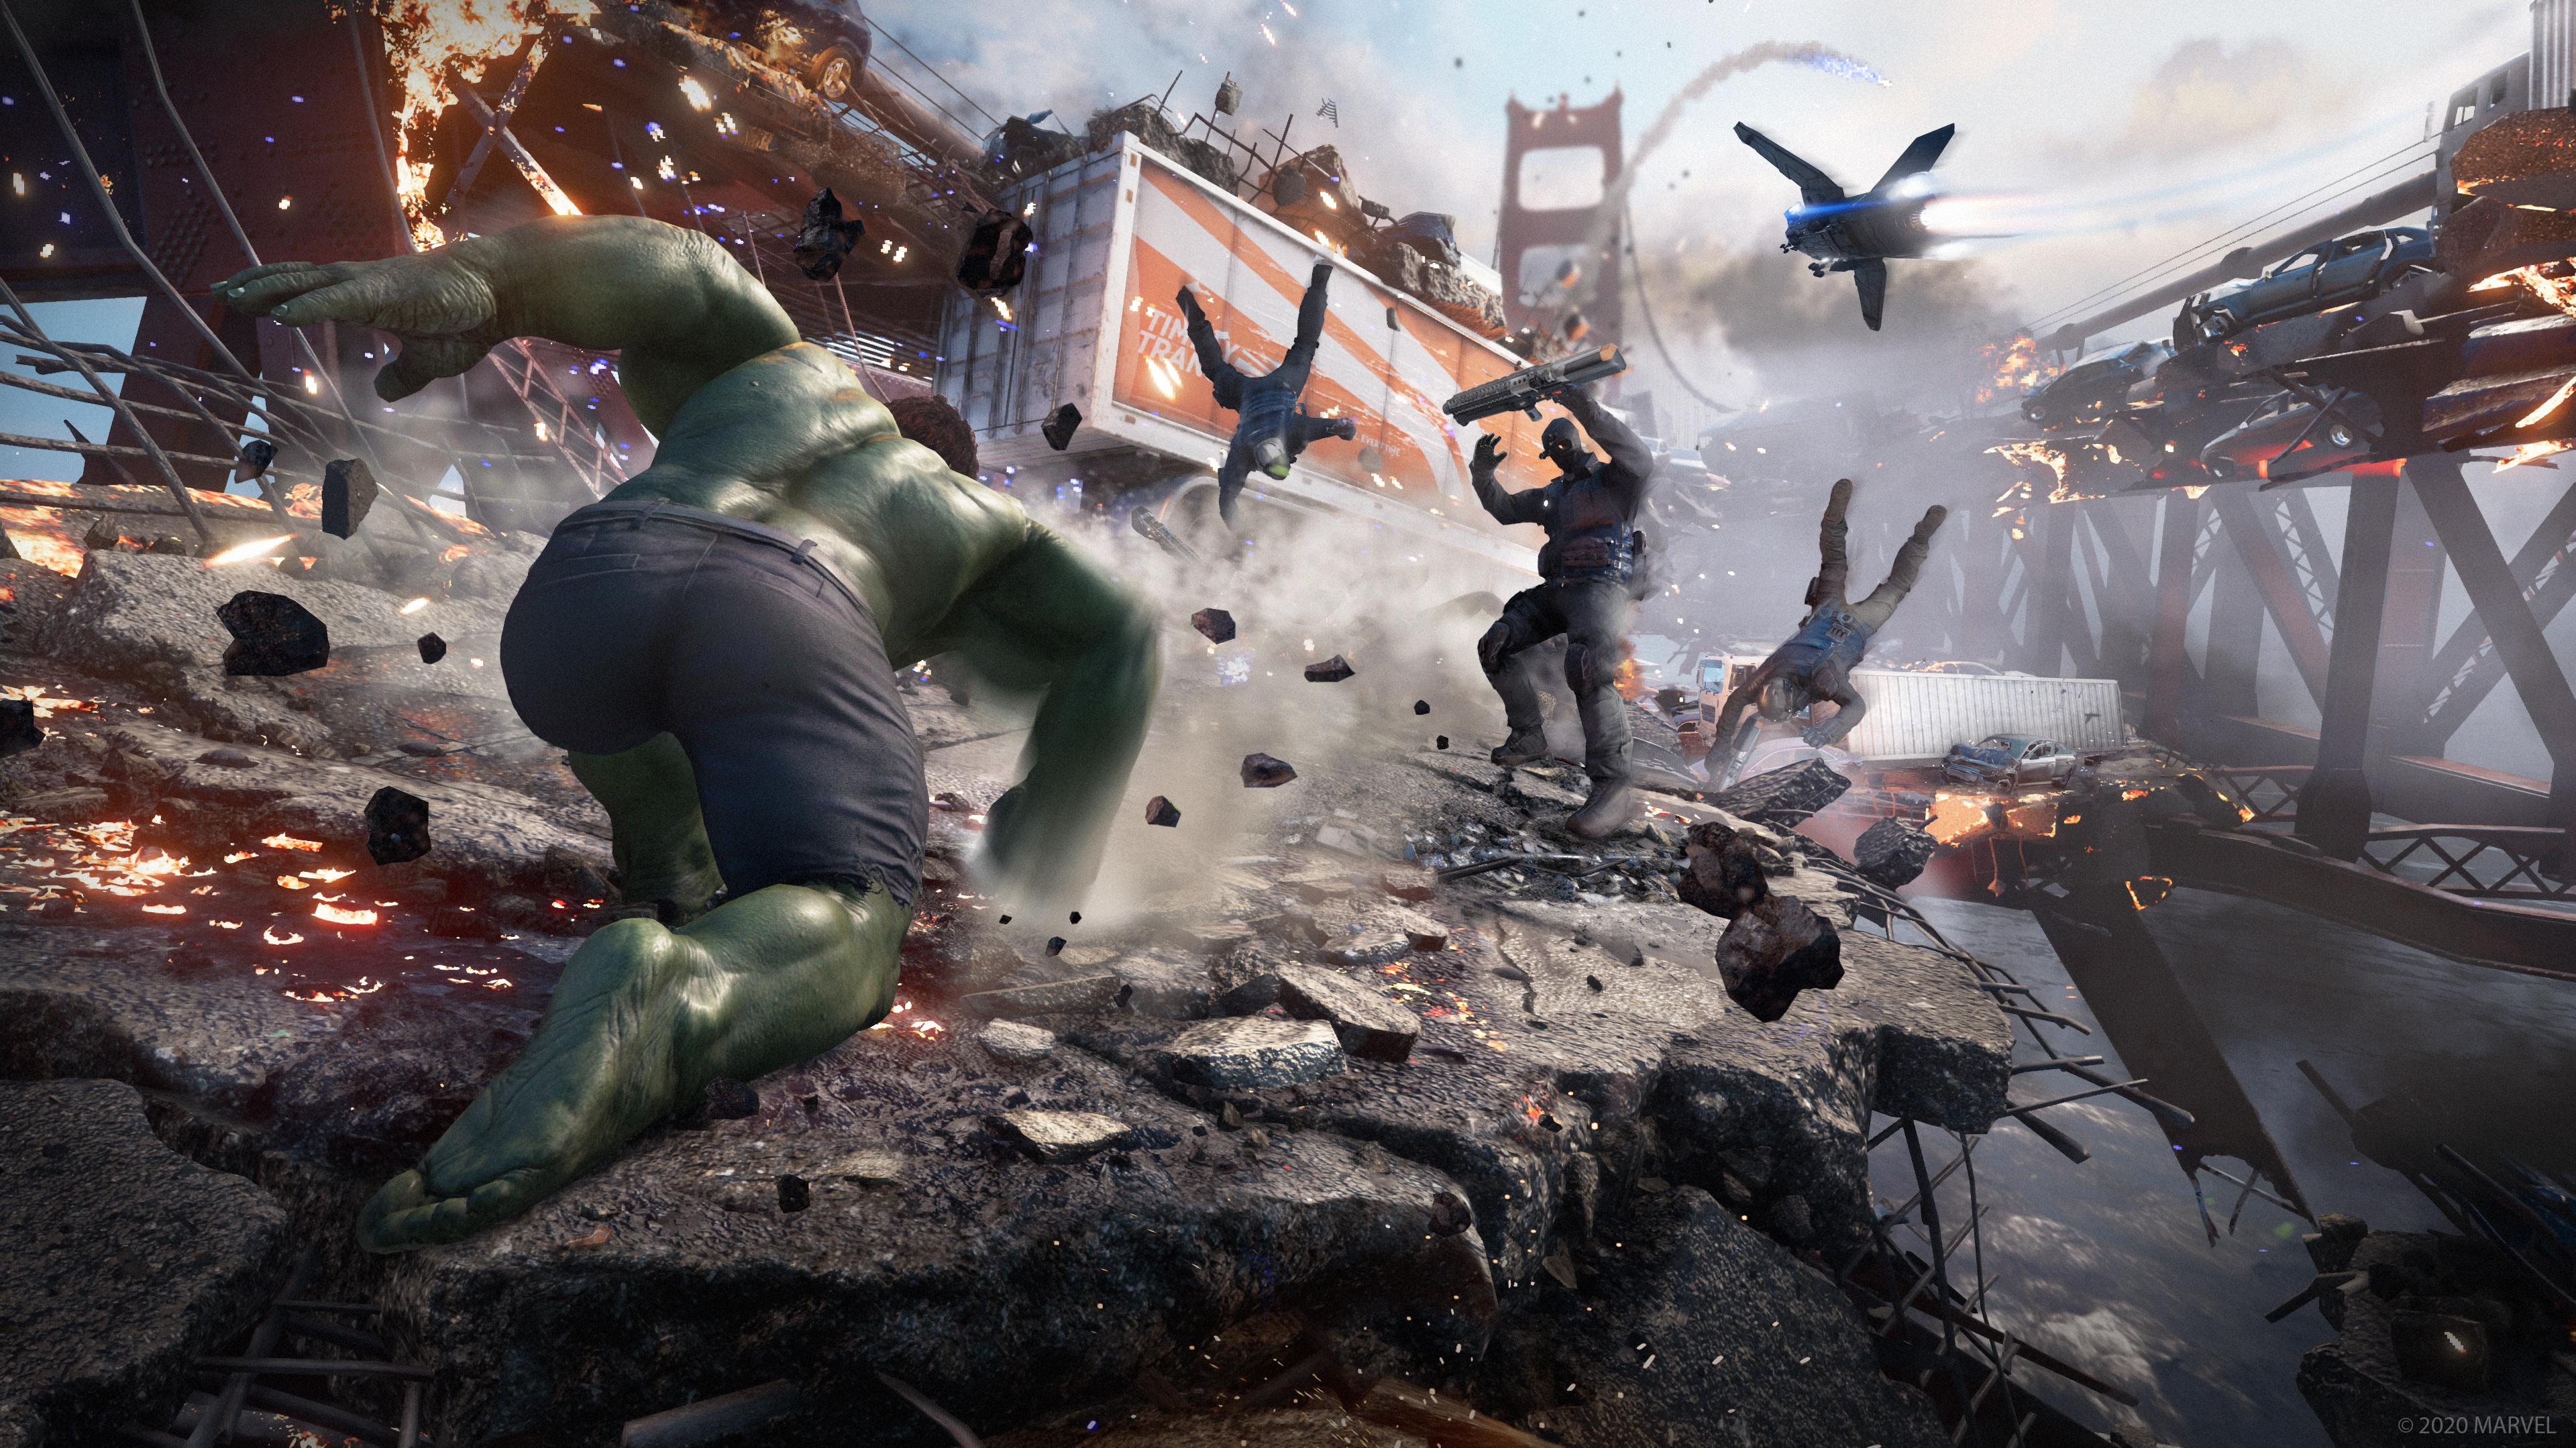 Marvels Avengers Marvel HD 4k Games Hulk